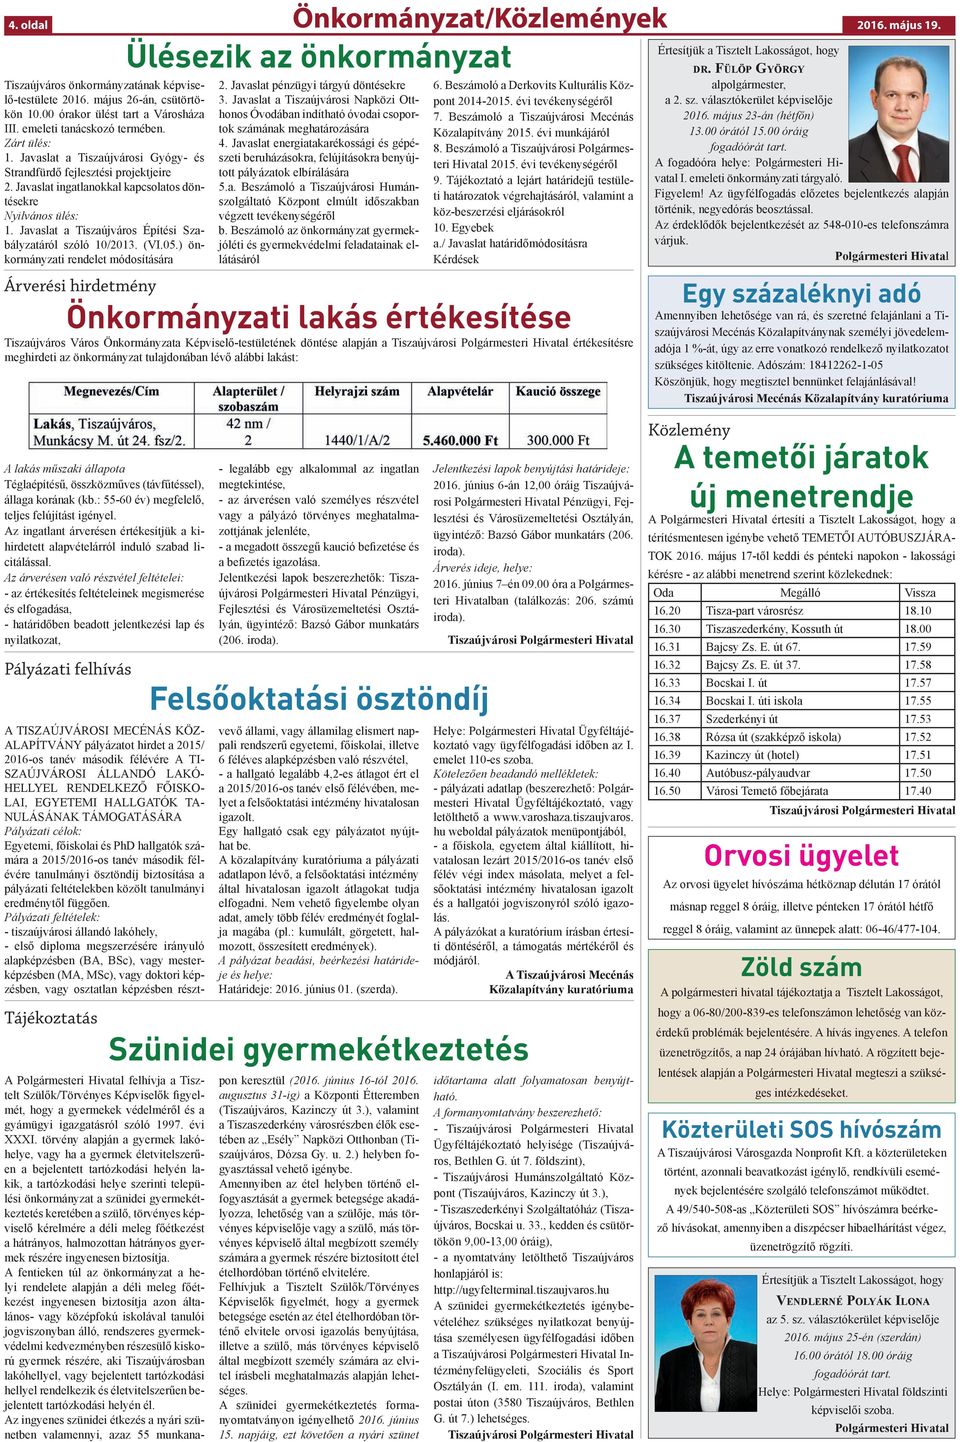 Javaslat a Tiszaújváros Építési Szabályzatáról szóló 10/2013. (VI.05.